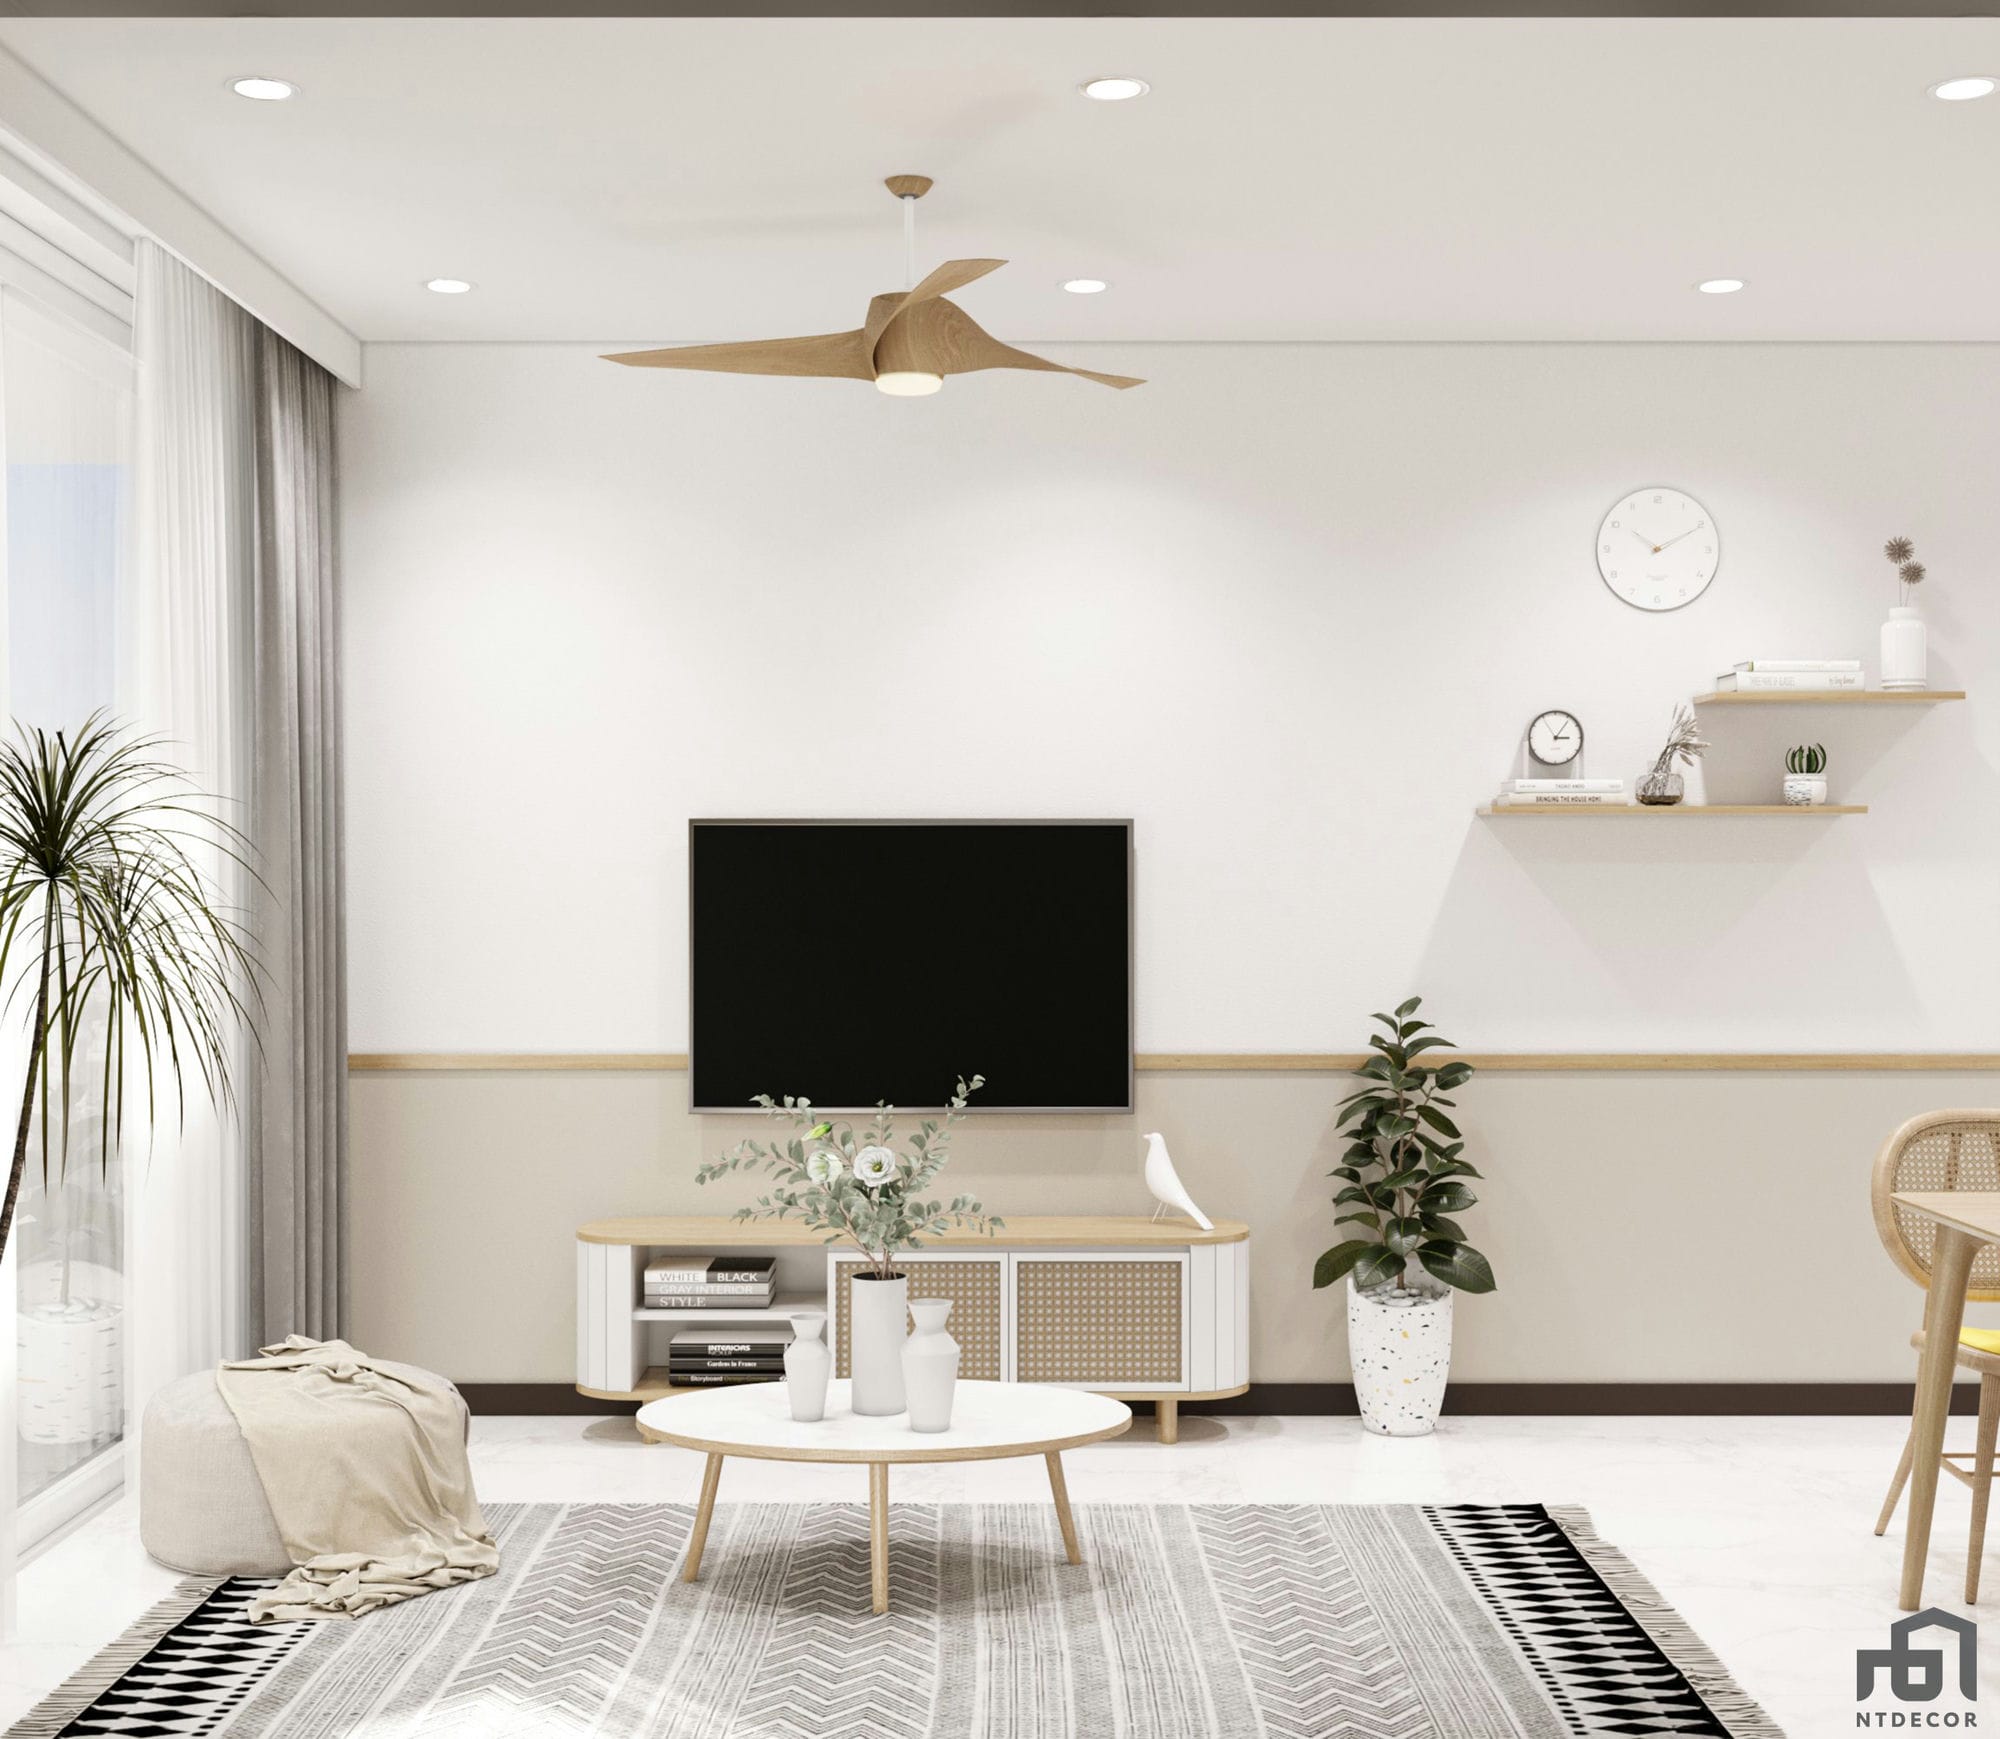 Living Room 3D Design of C-Sky View Apartment | NTDecor